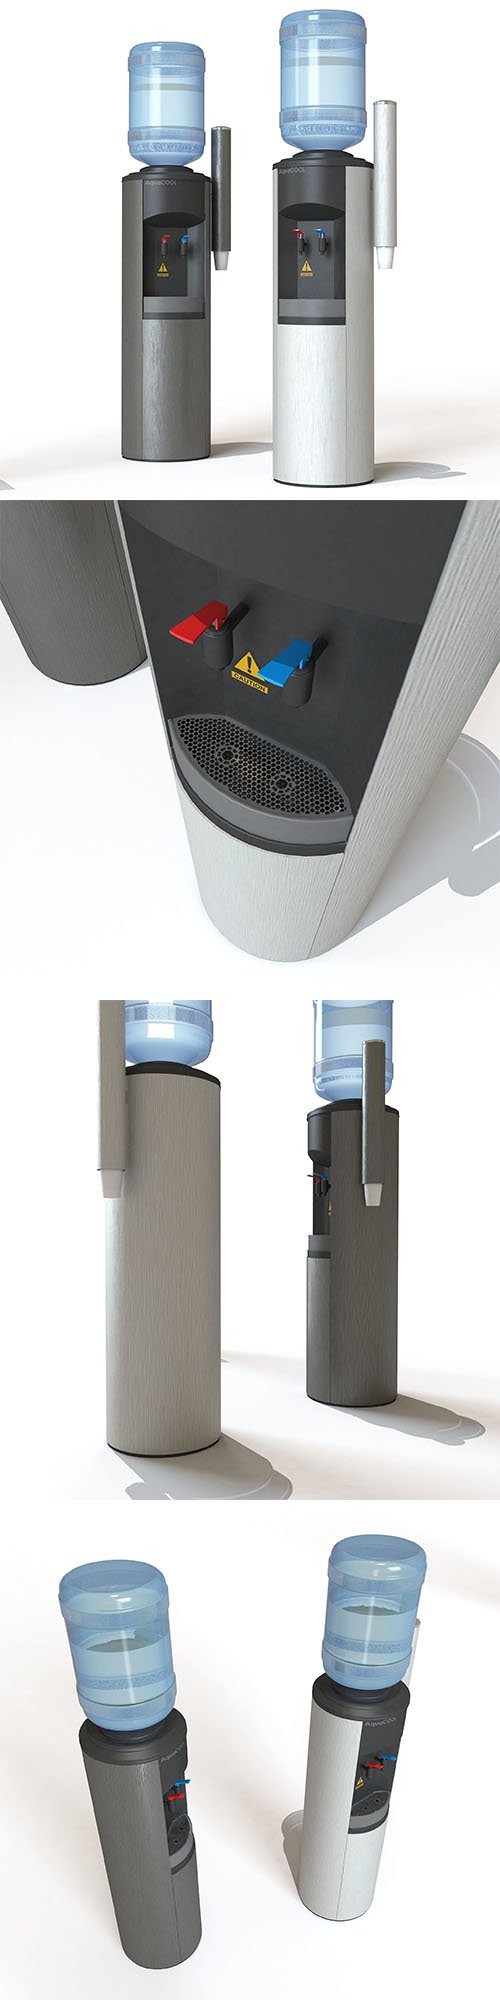 Water cooler dispenser 3D model